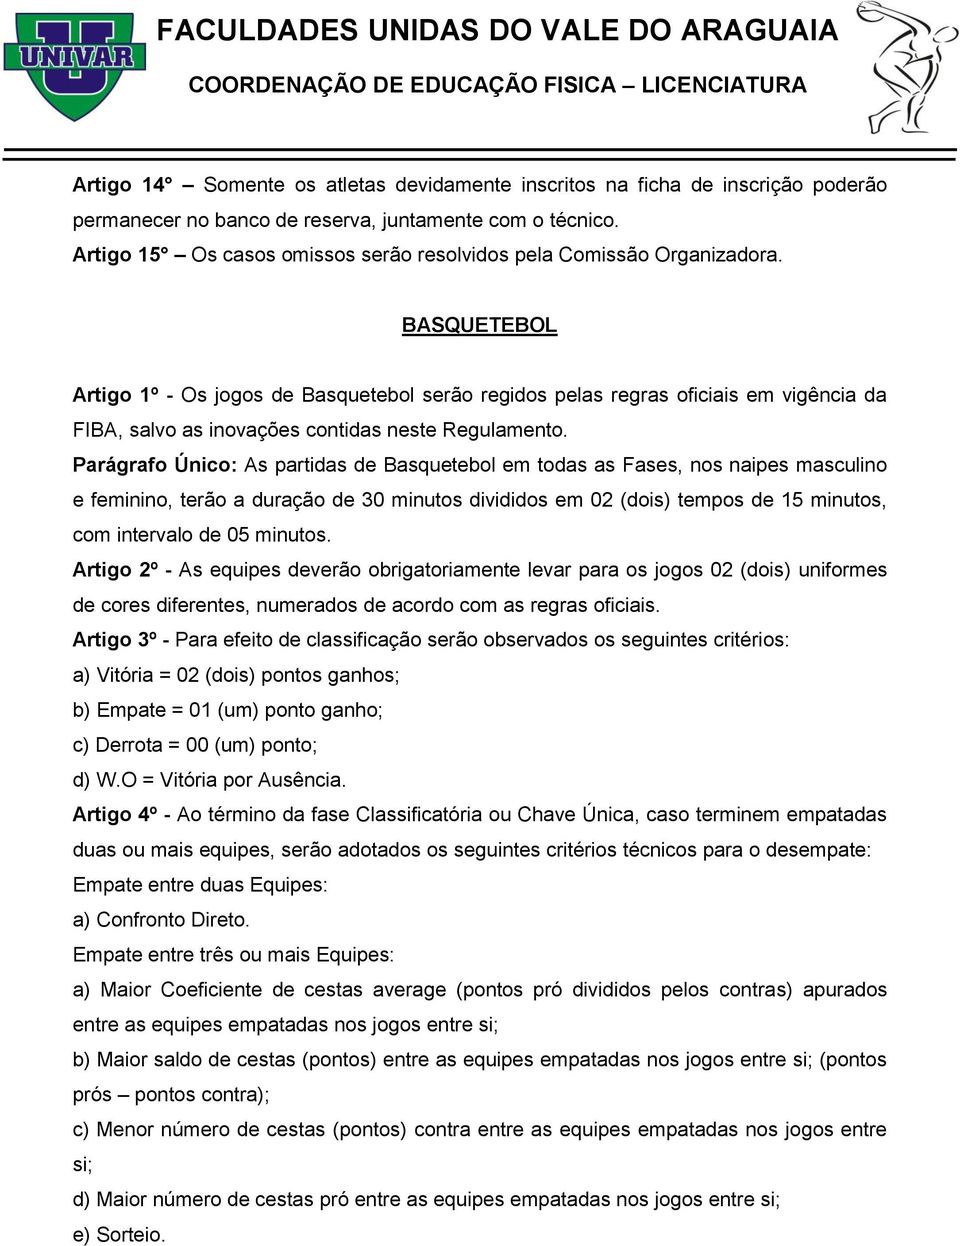 BASQUETEBOL Artigo 1º - Os jogos de Basquetebol serão regidos pelas regras oficiais em vigência da FIBA, salvo as inovações contidas neste Regulamento.